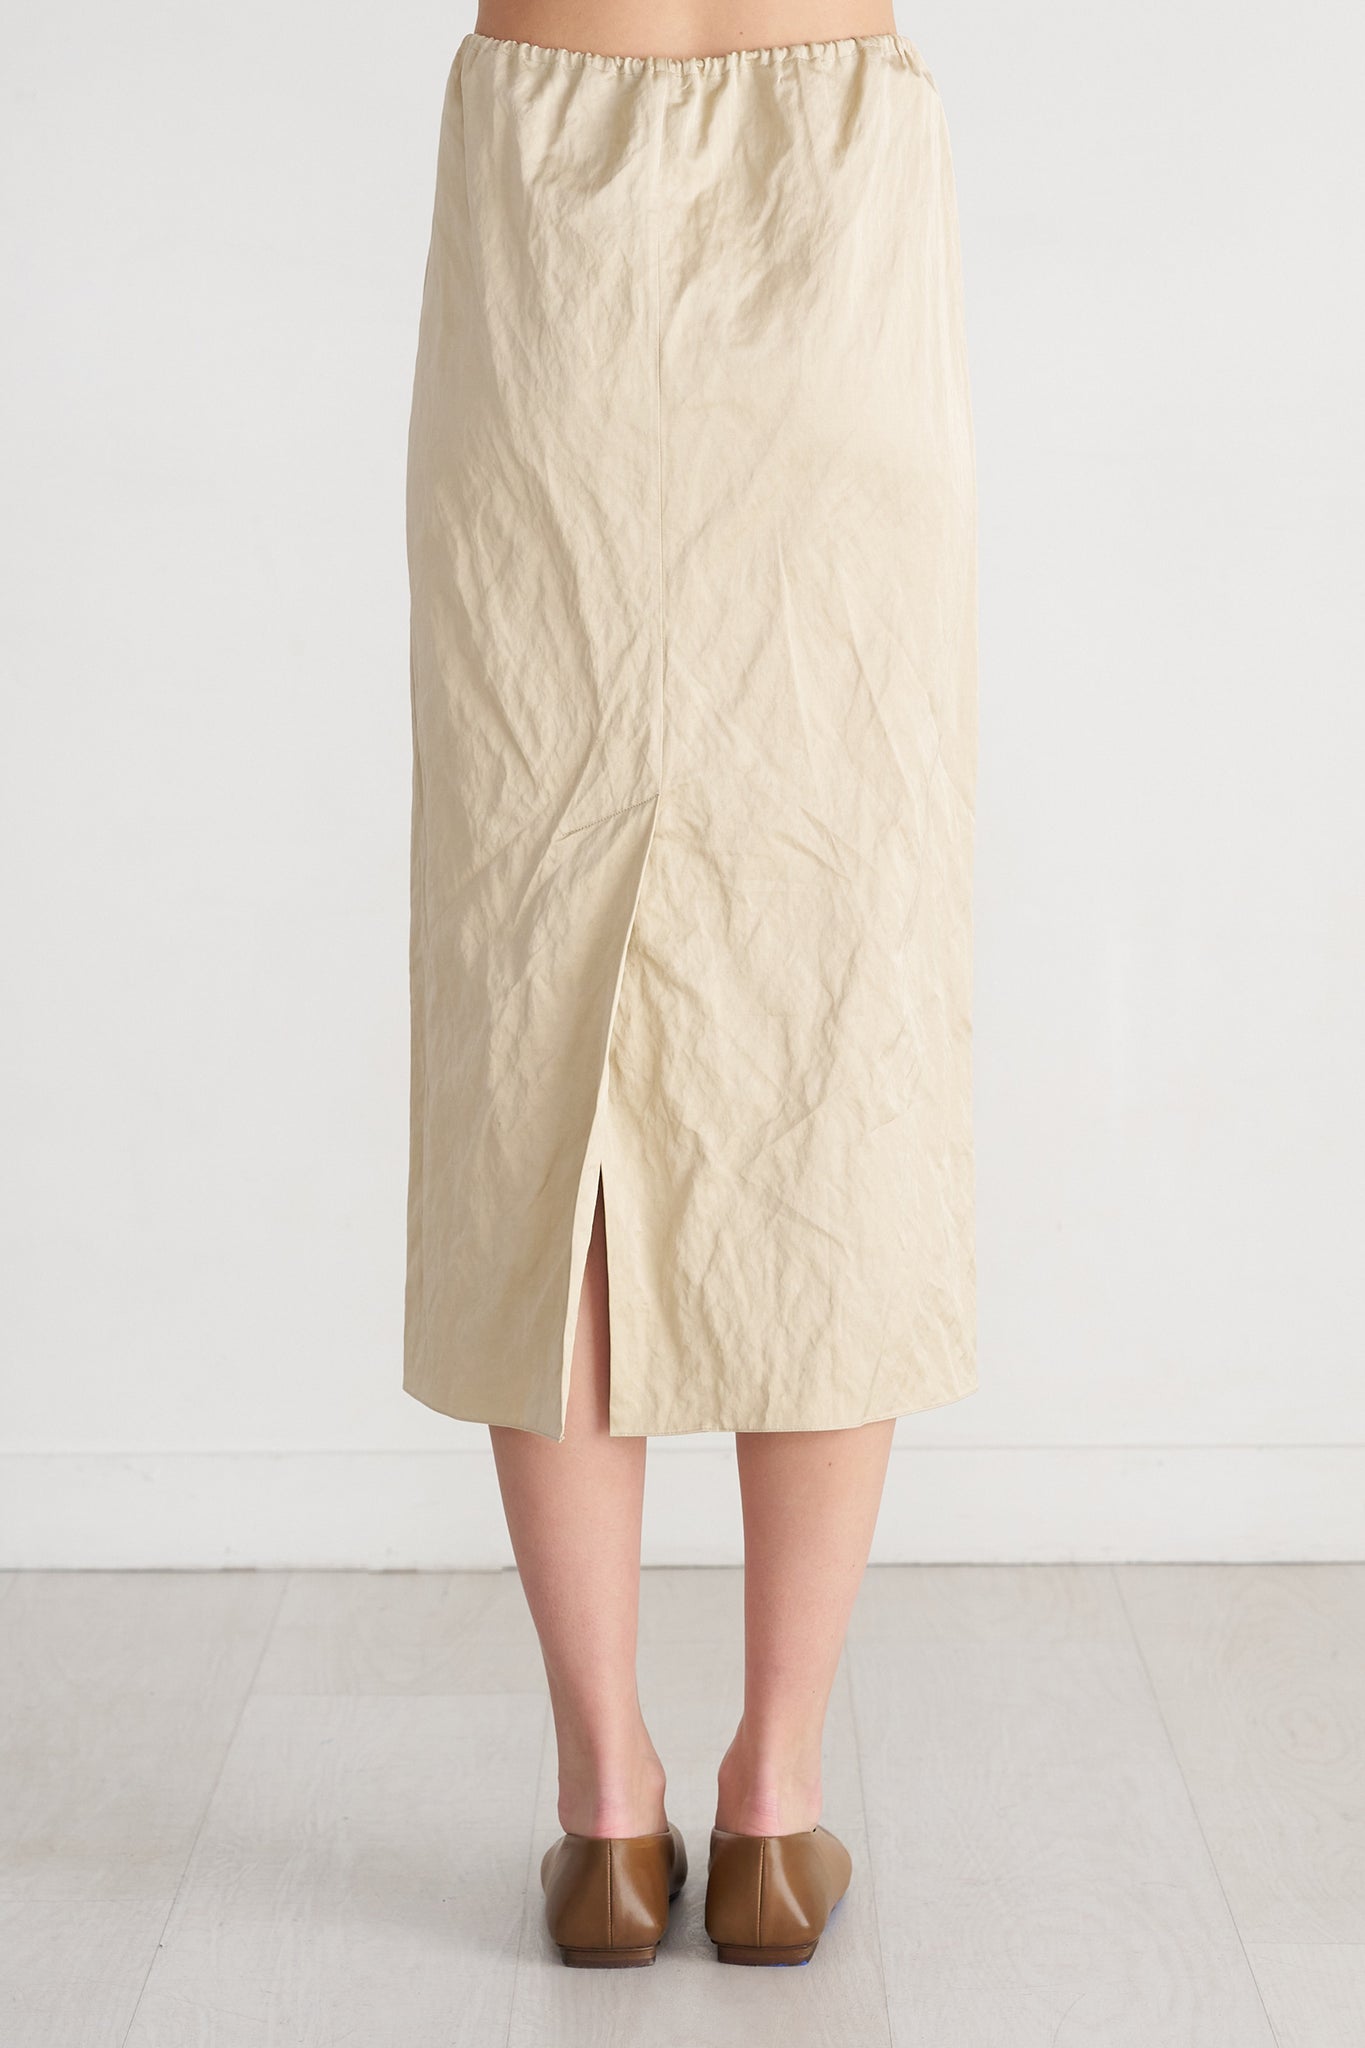 GAUCHERE - Skirt, Light Beige